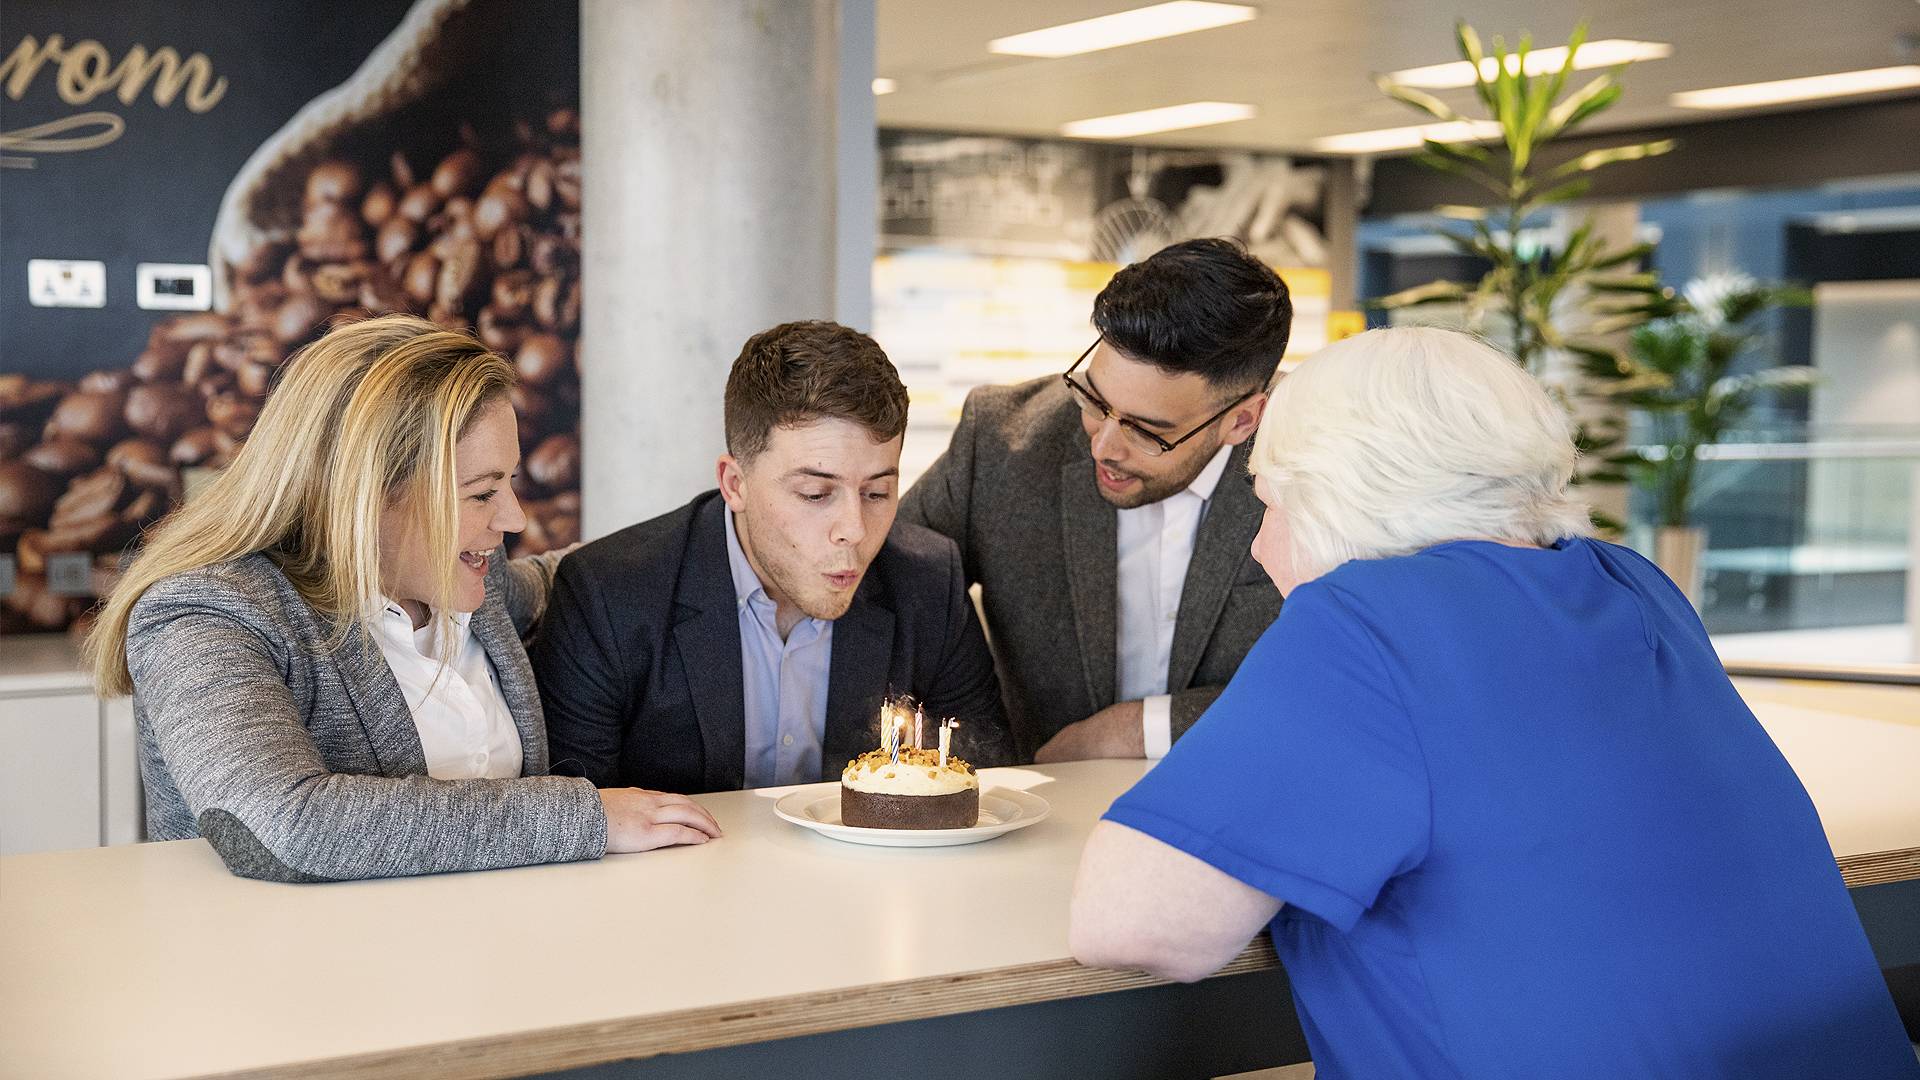 Office - birthday celebration